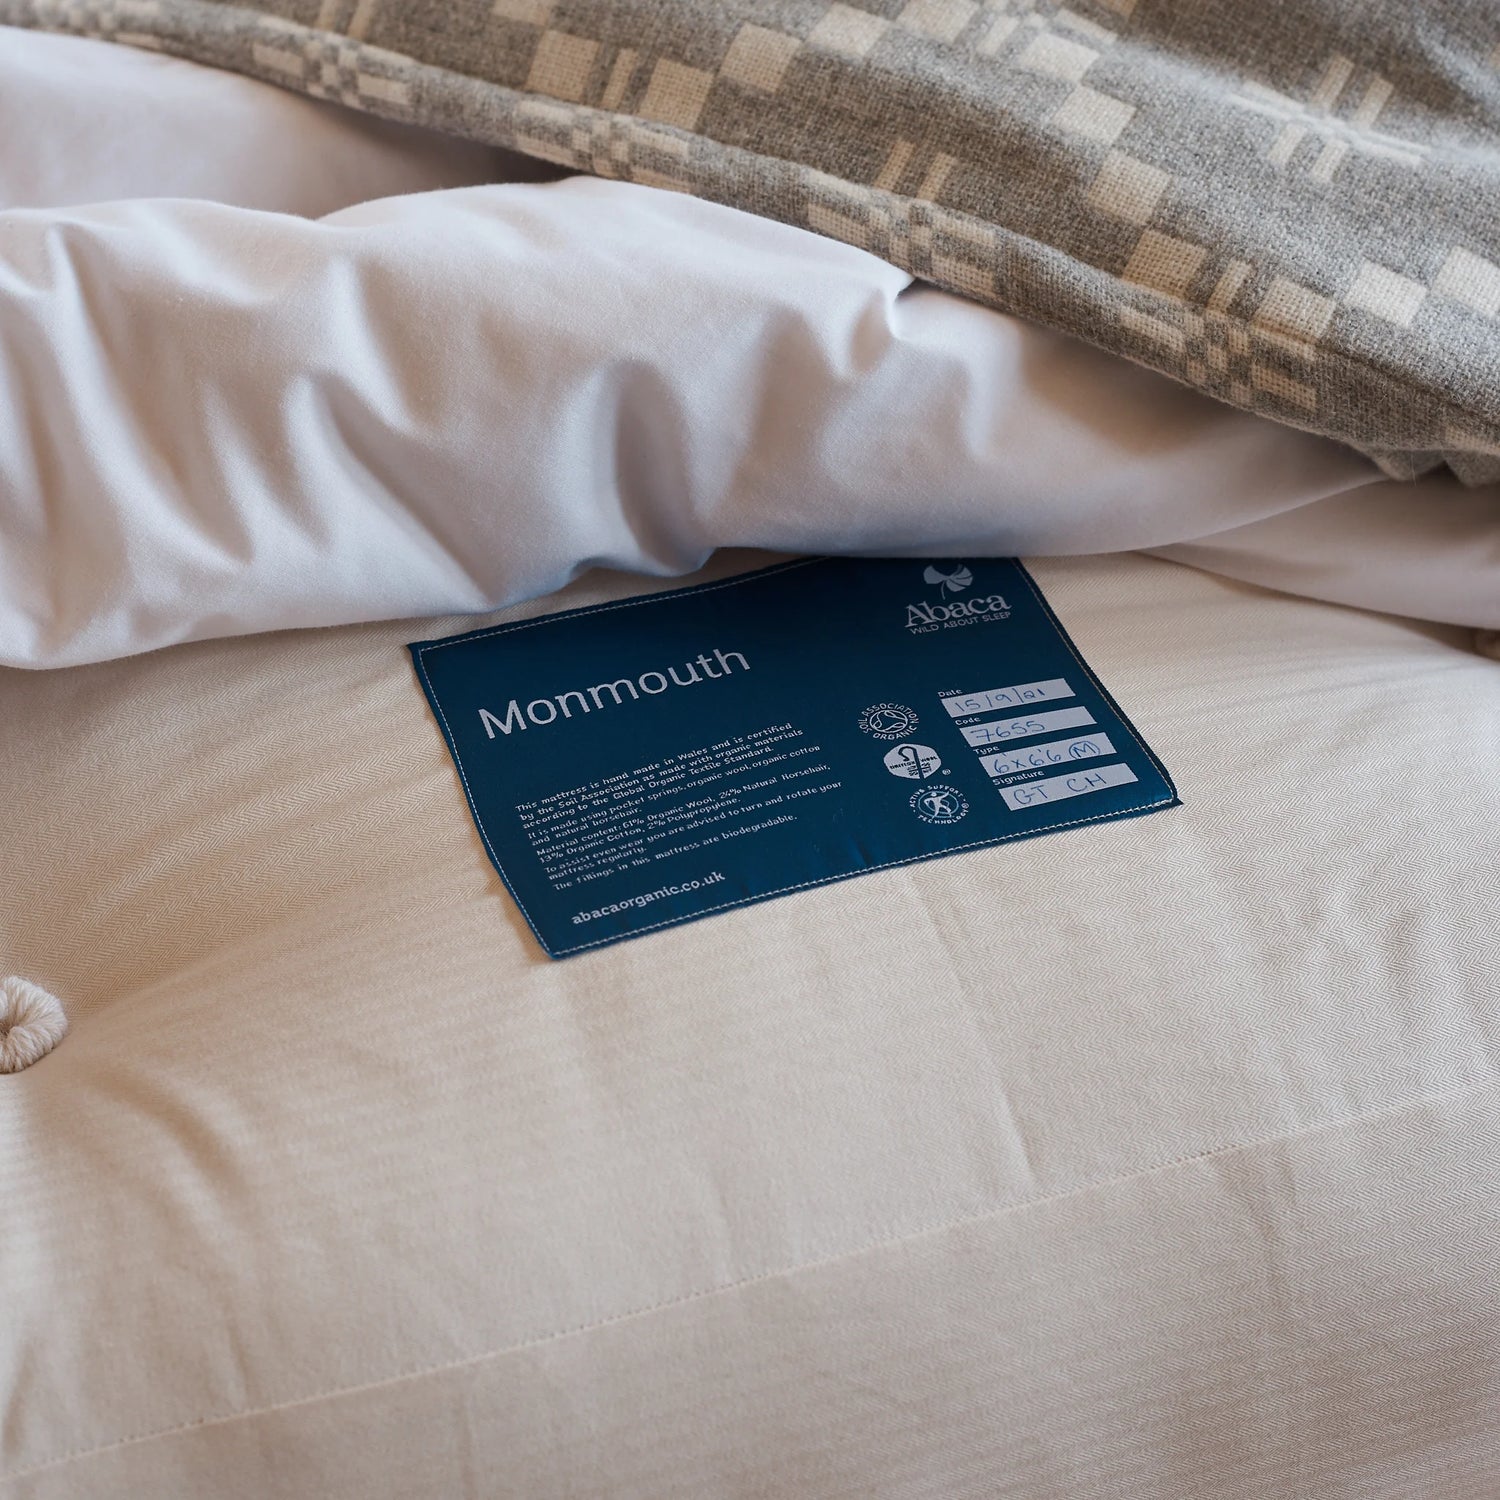 Luxury pocket sprung mattress Monmouth